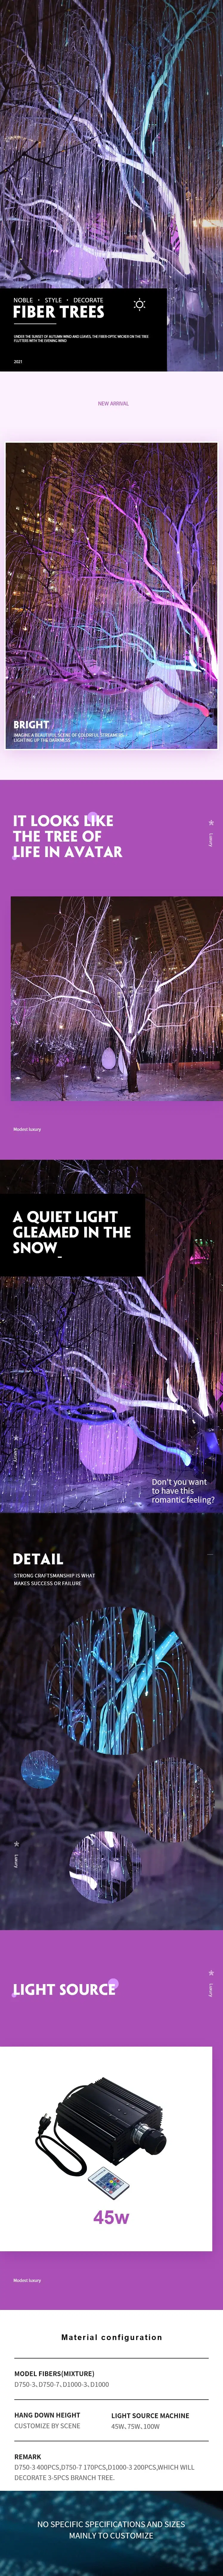 LED Fiber Optic Lighting Kits for Outdoor Avatar Trees